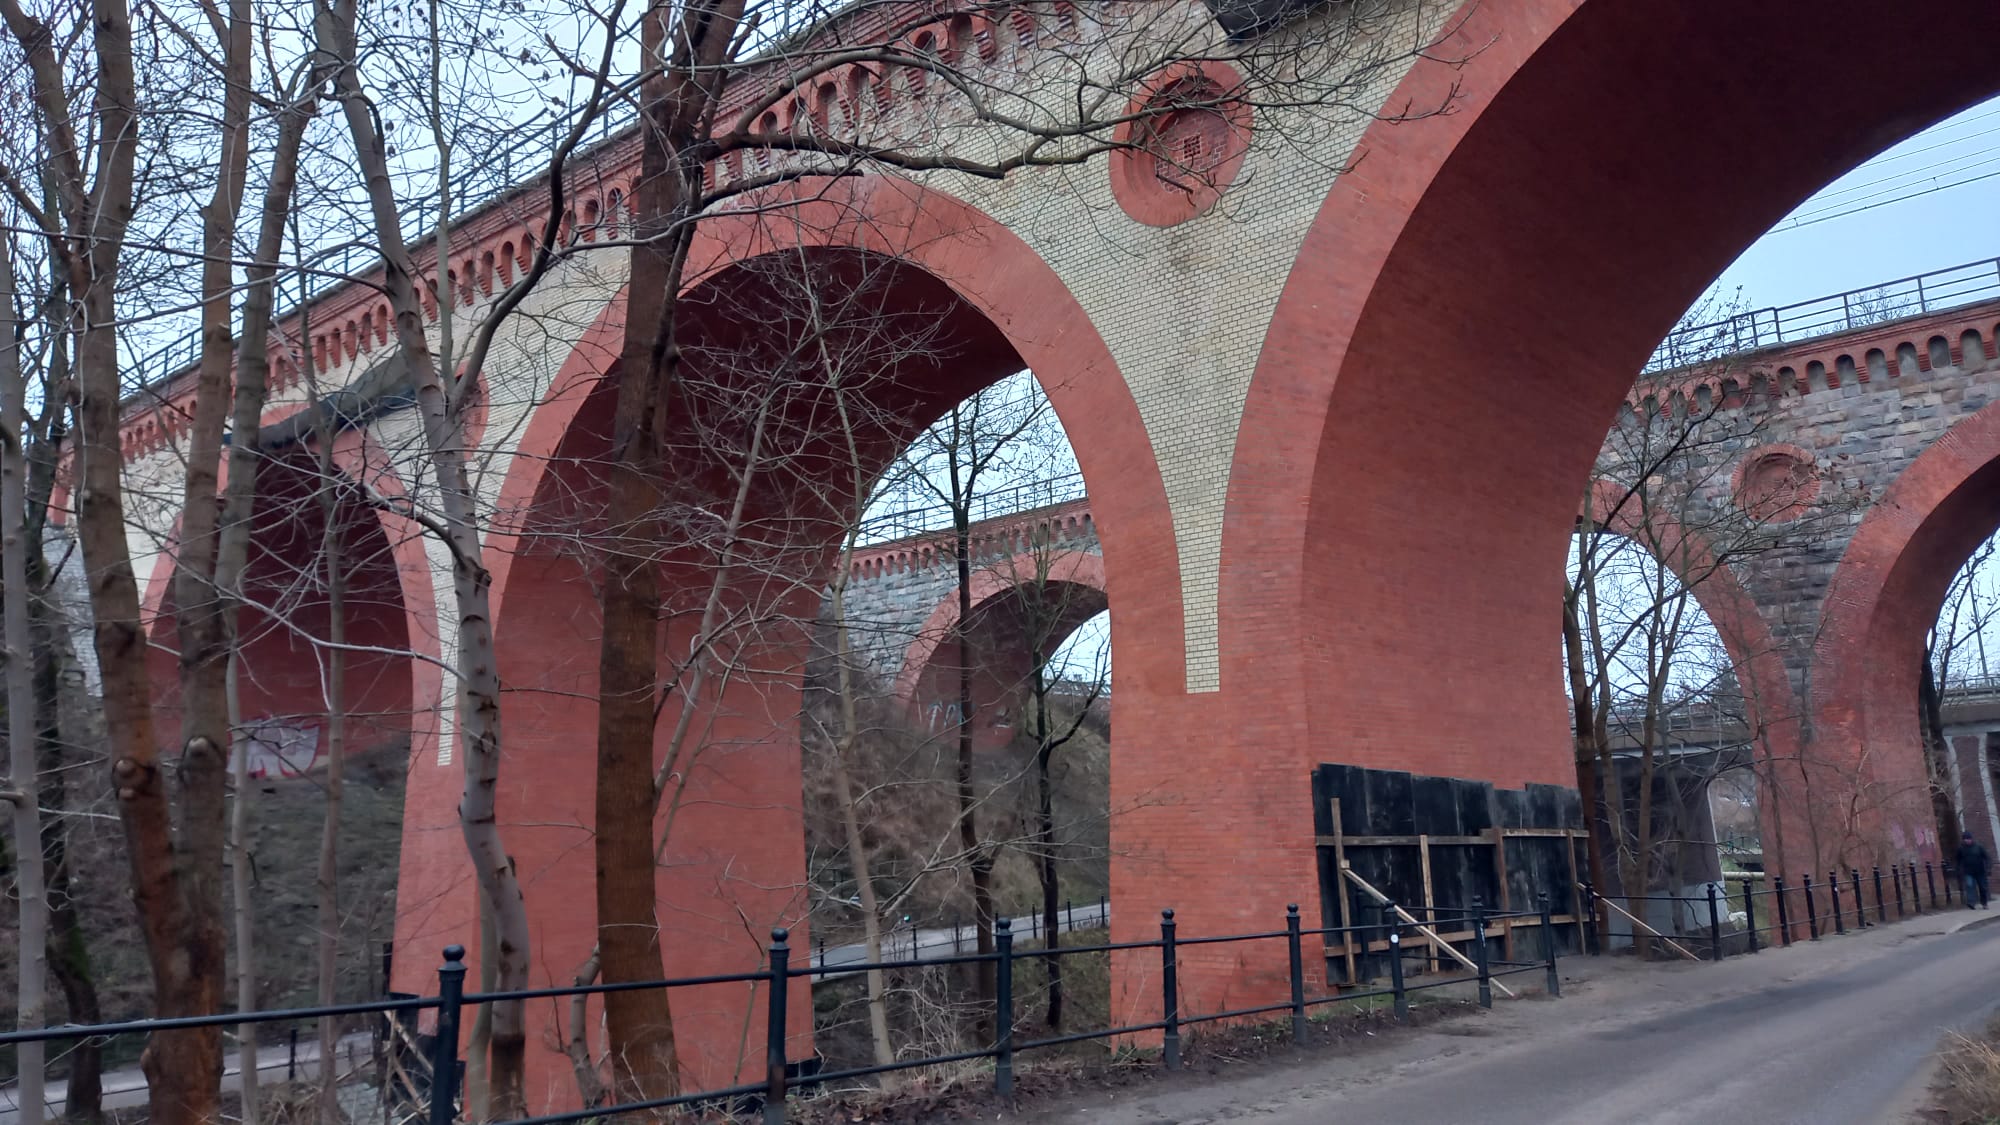 Tajemnicze obiekty przy słynnych olsztyńskich wiaduktach remont Wiadomości, Olsztyn